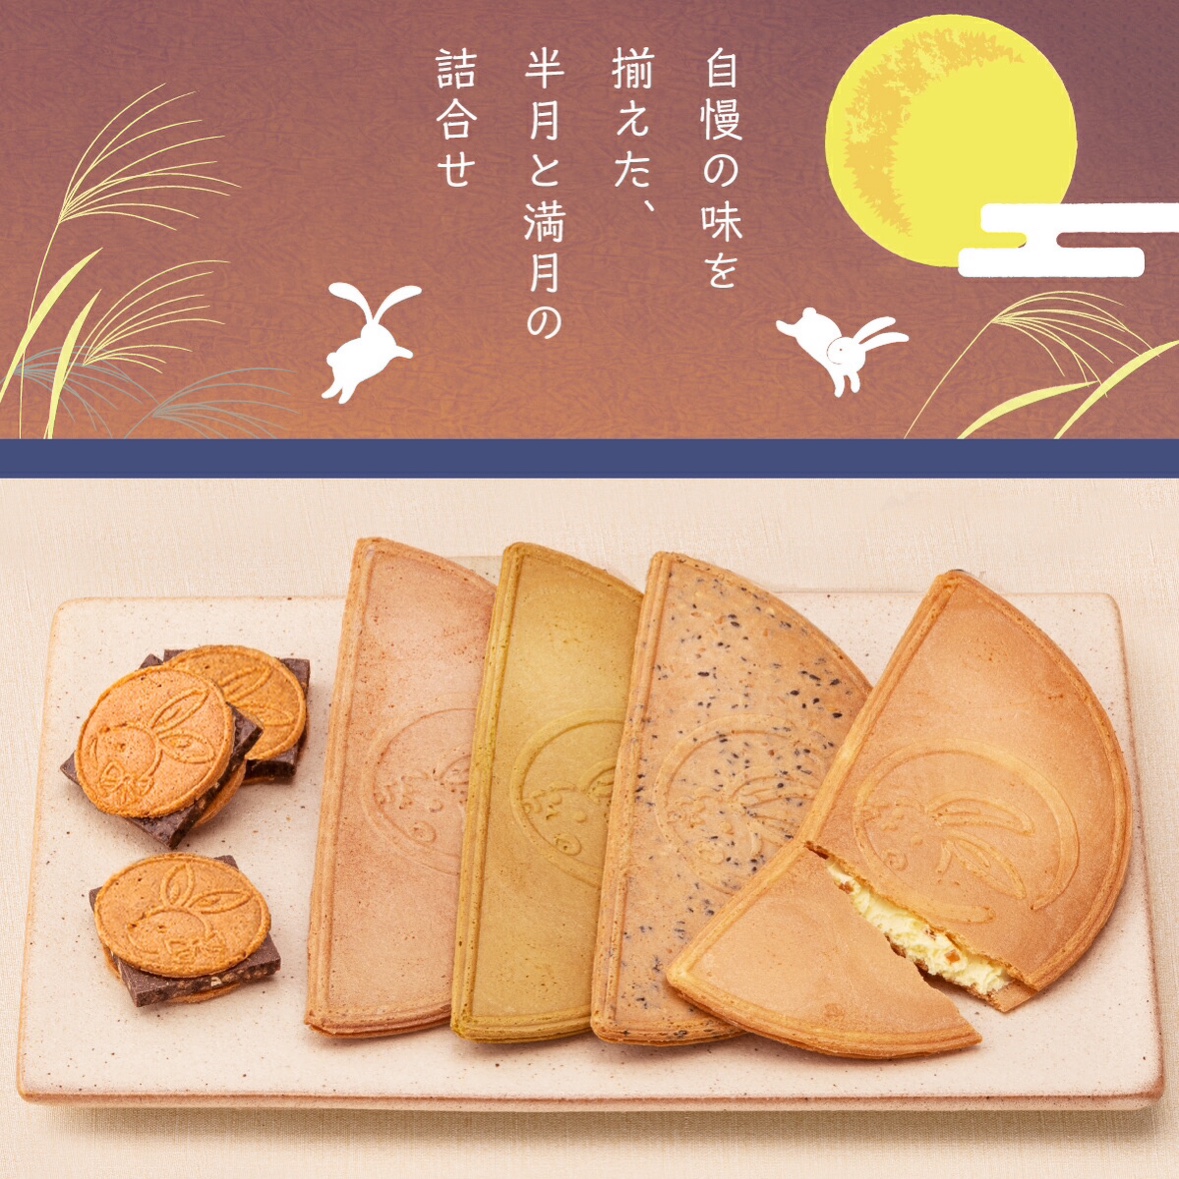 订购 日本镰仓五郎本店 多种口味奶油夹心半月薄脆饼干礼盒